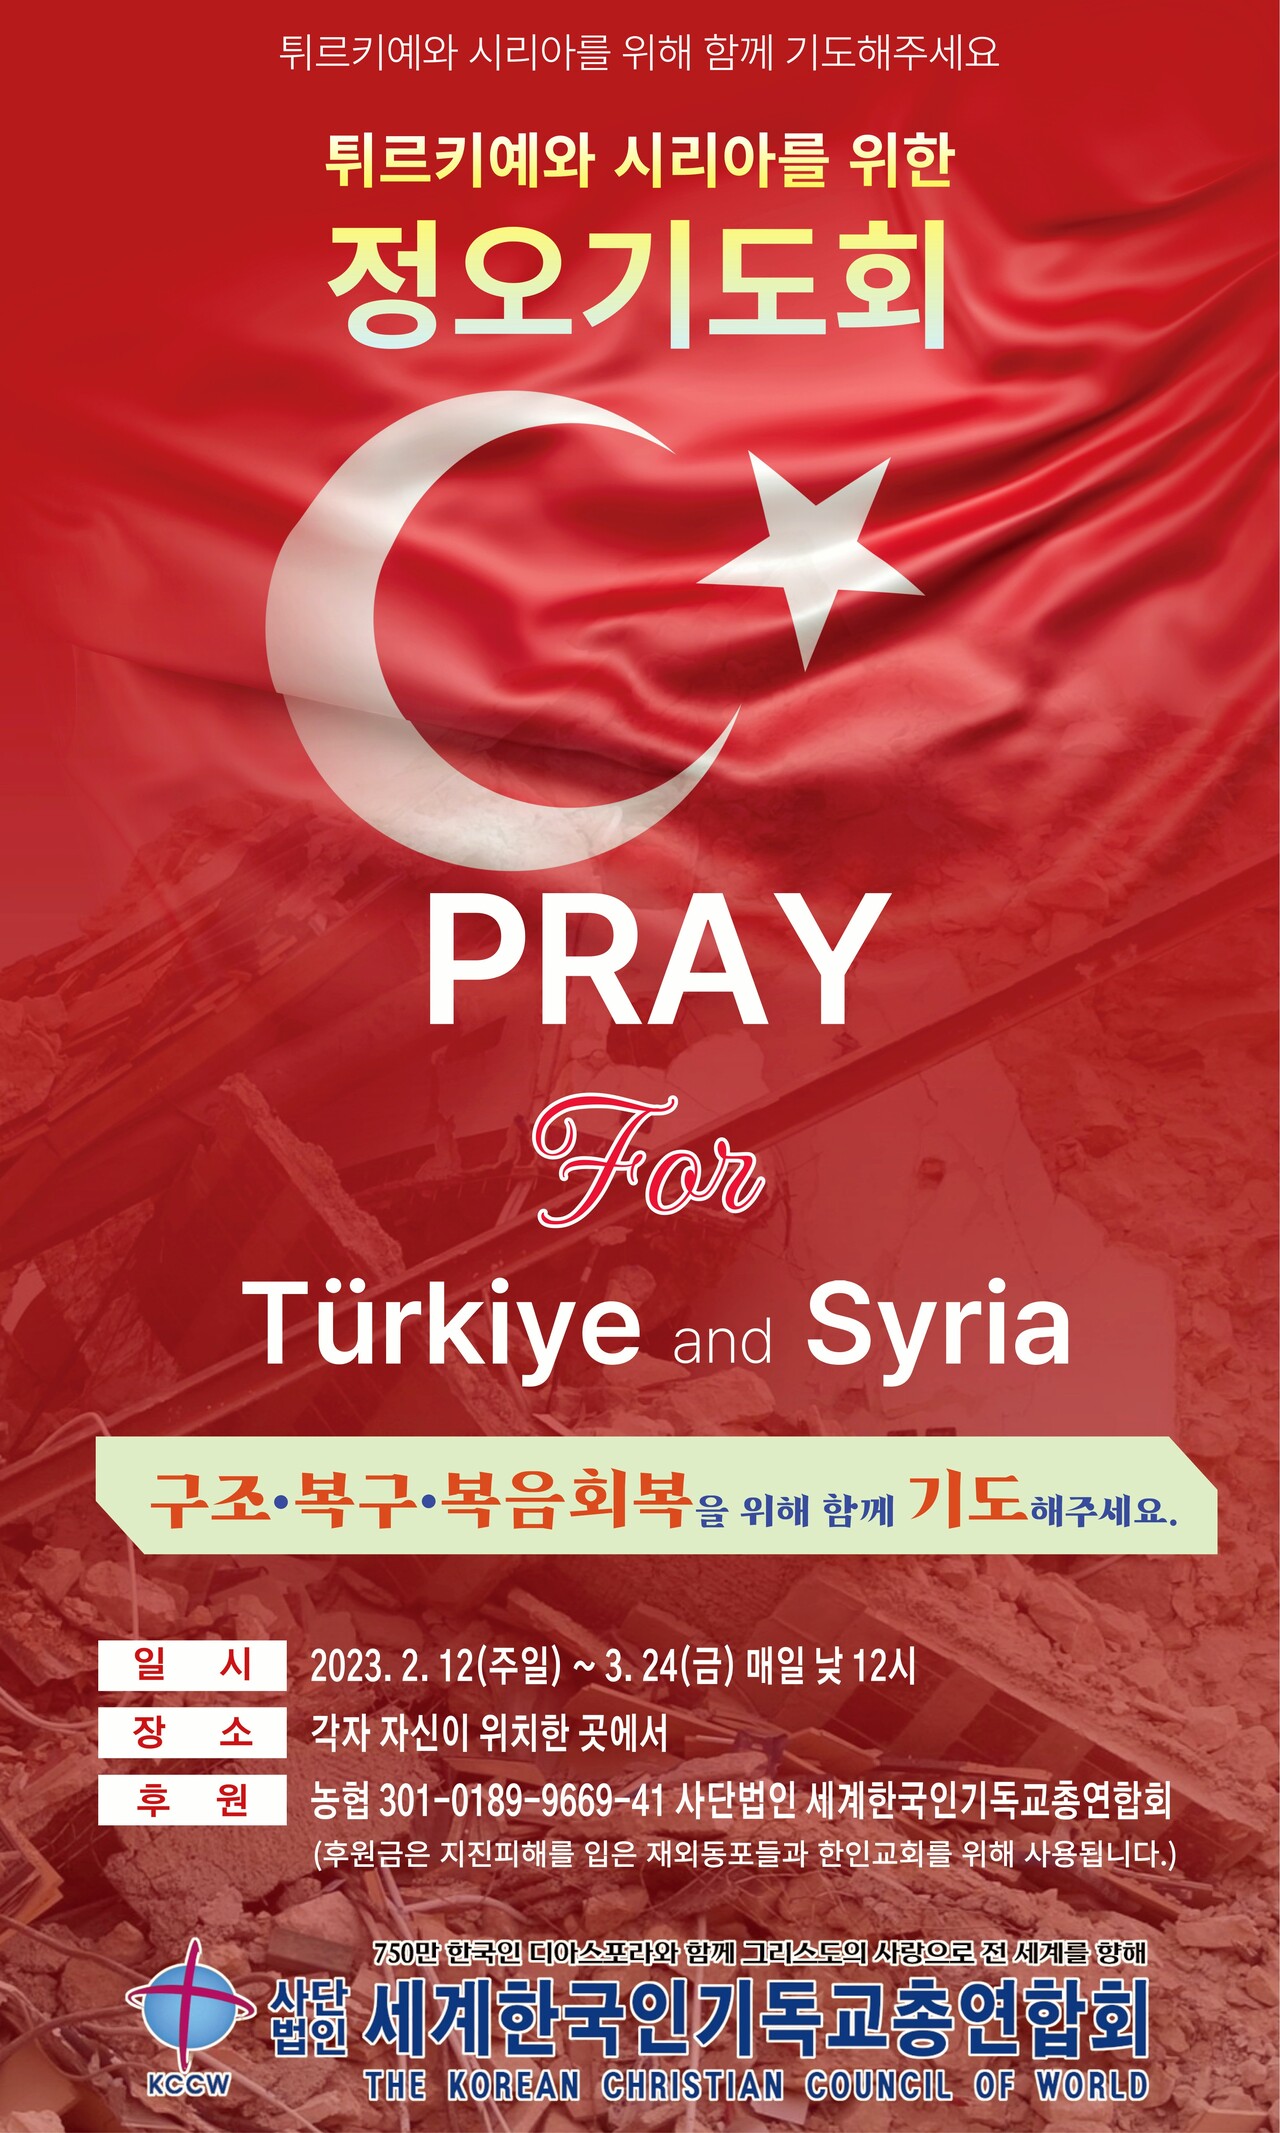 세기총은 지진으로 큰 피해를 입은 튀르키예와 시리아를 위한 40일 정오기도회를 드린다.